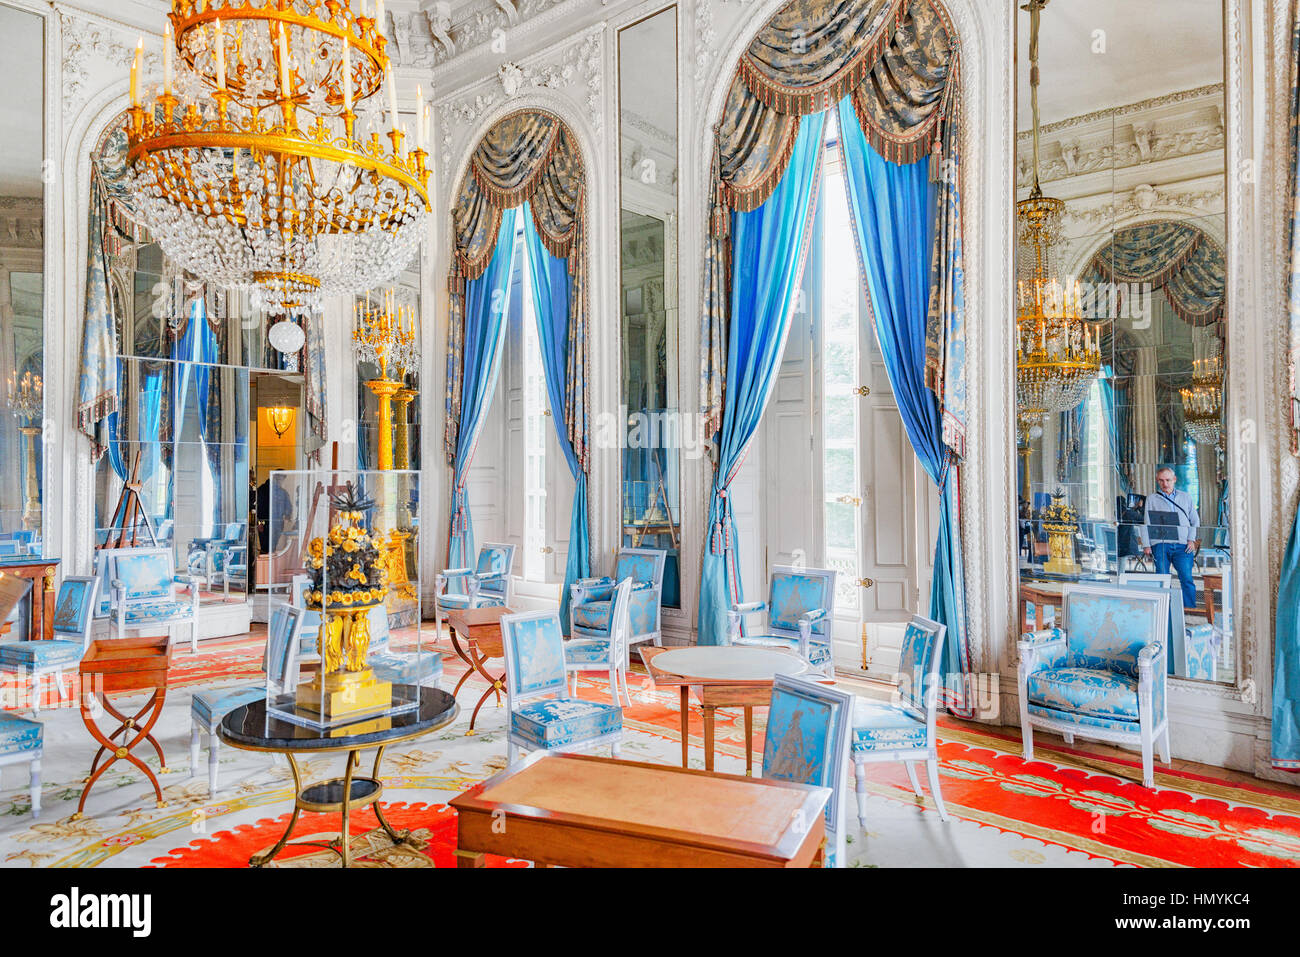 VERSAILLES, FRANCE - Juillet 02, 2016 : Appartements dans le Grand Trianon.Salon Ice Lounge (salon des glaces). Château de Versailles. La France. Banque D'Images